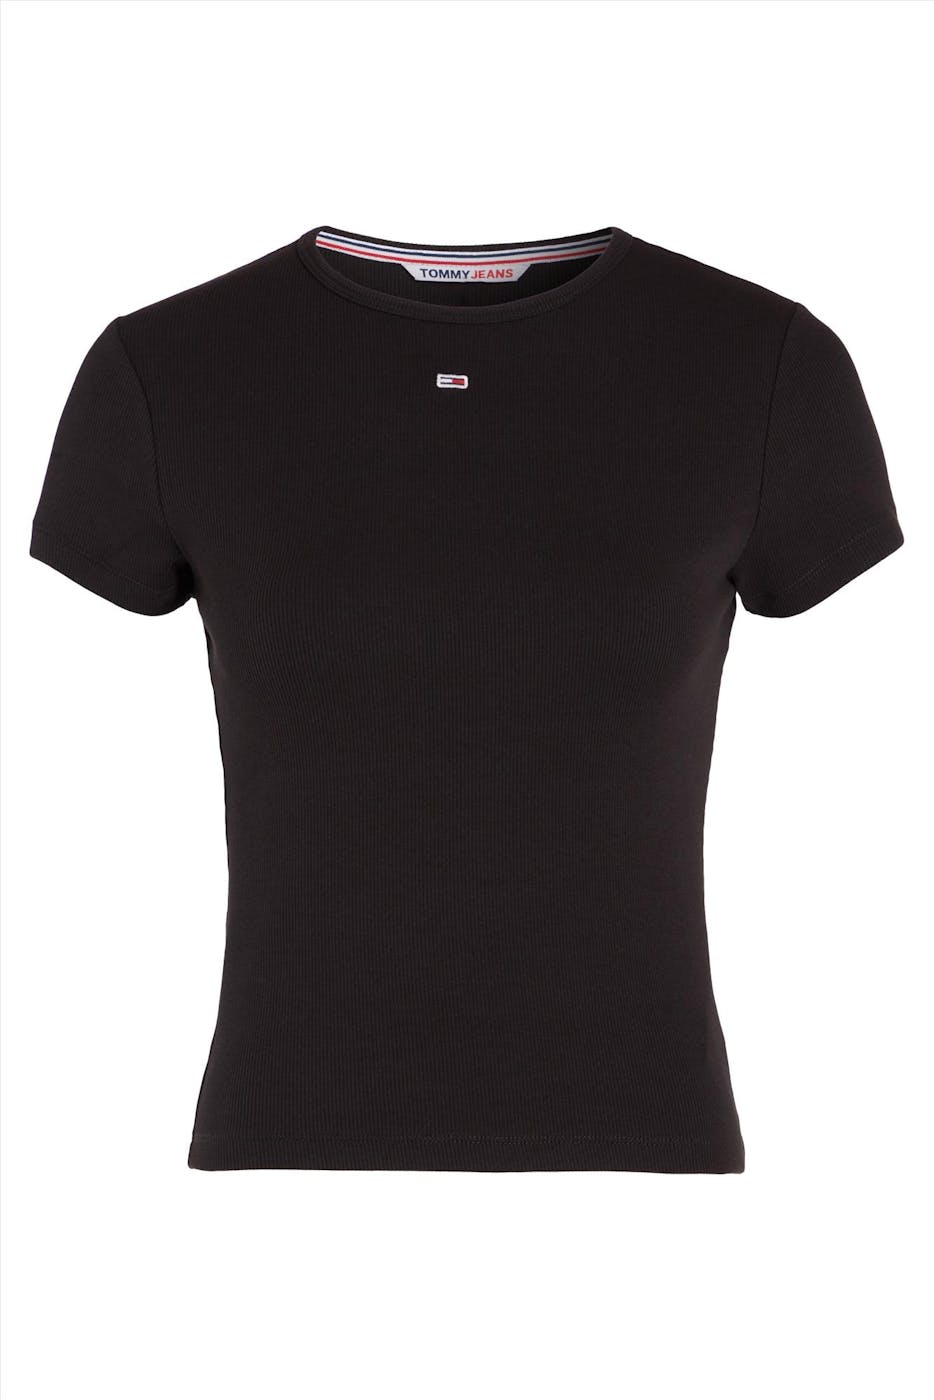 Tommy Jeans - Zwarte Geribde T-shirt